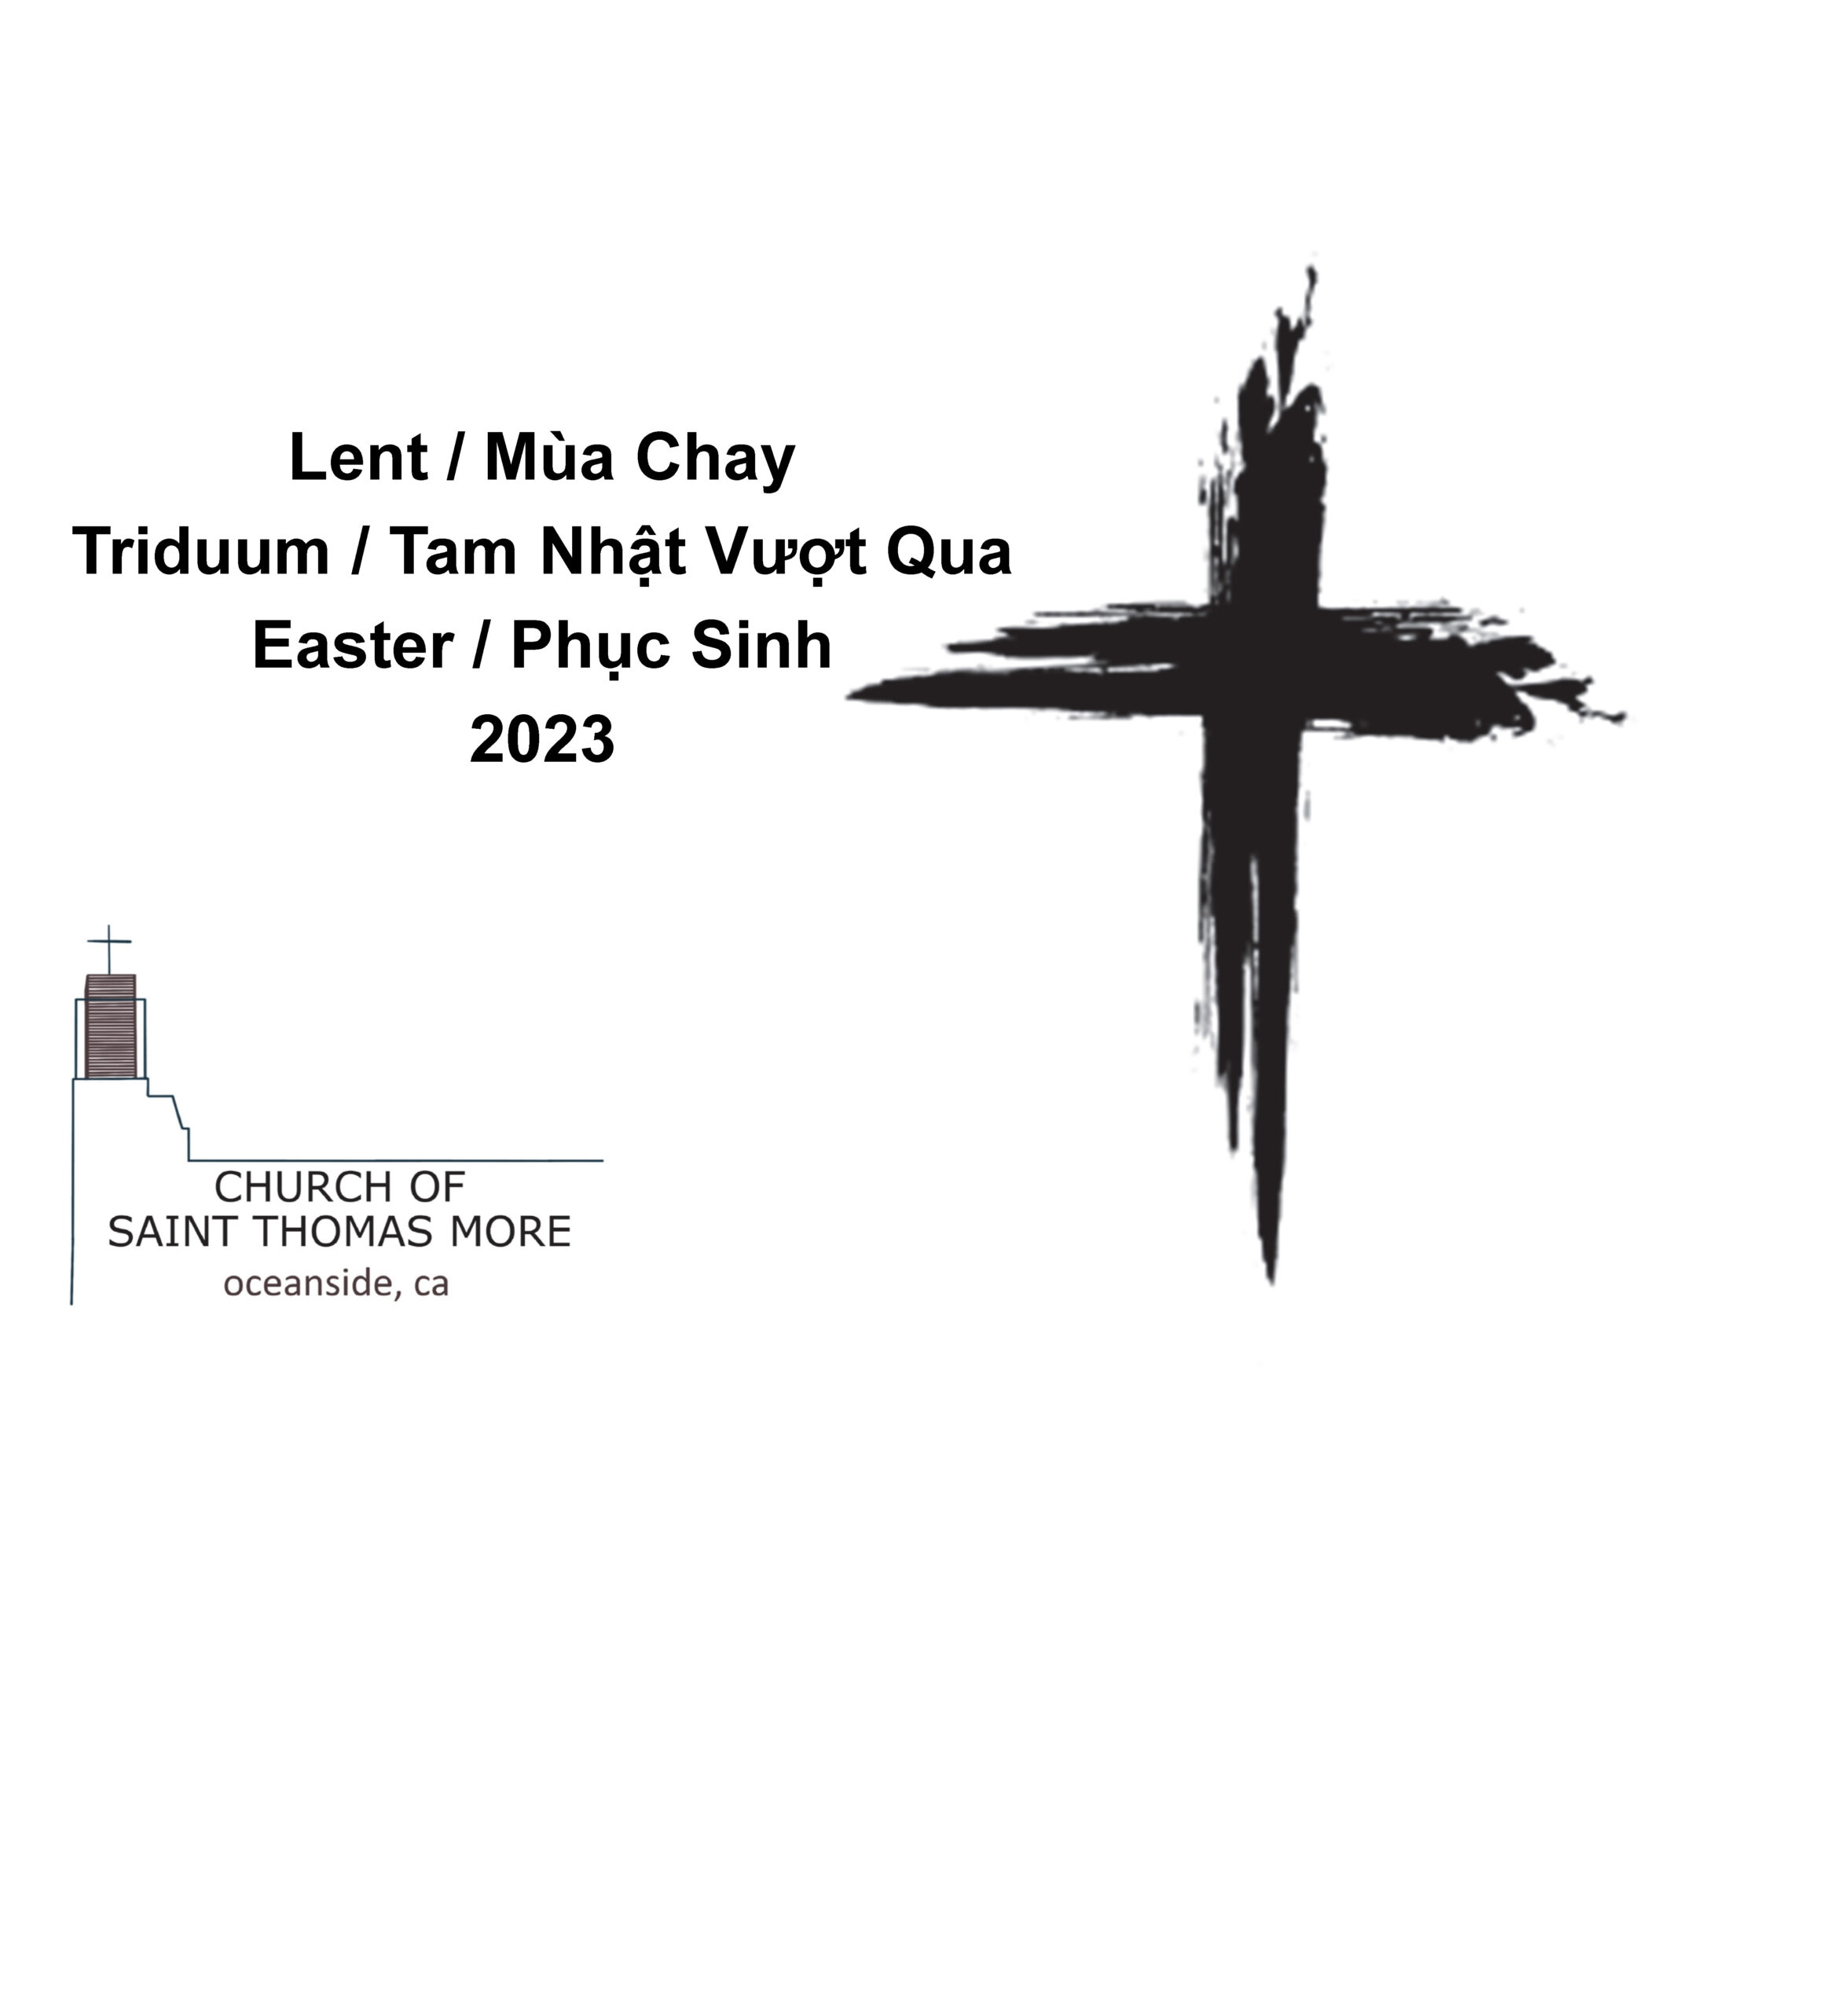 Lent + Triduum + Easter 2023